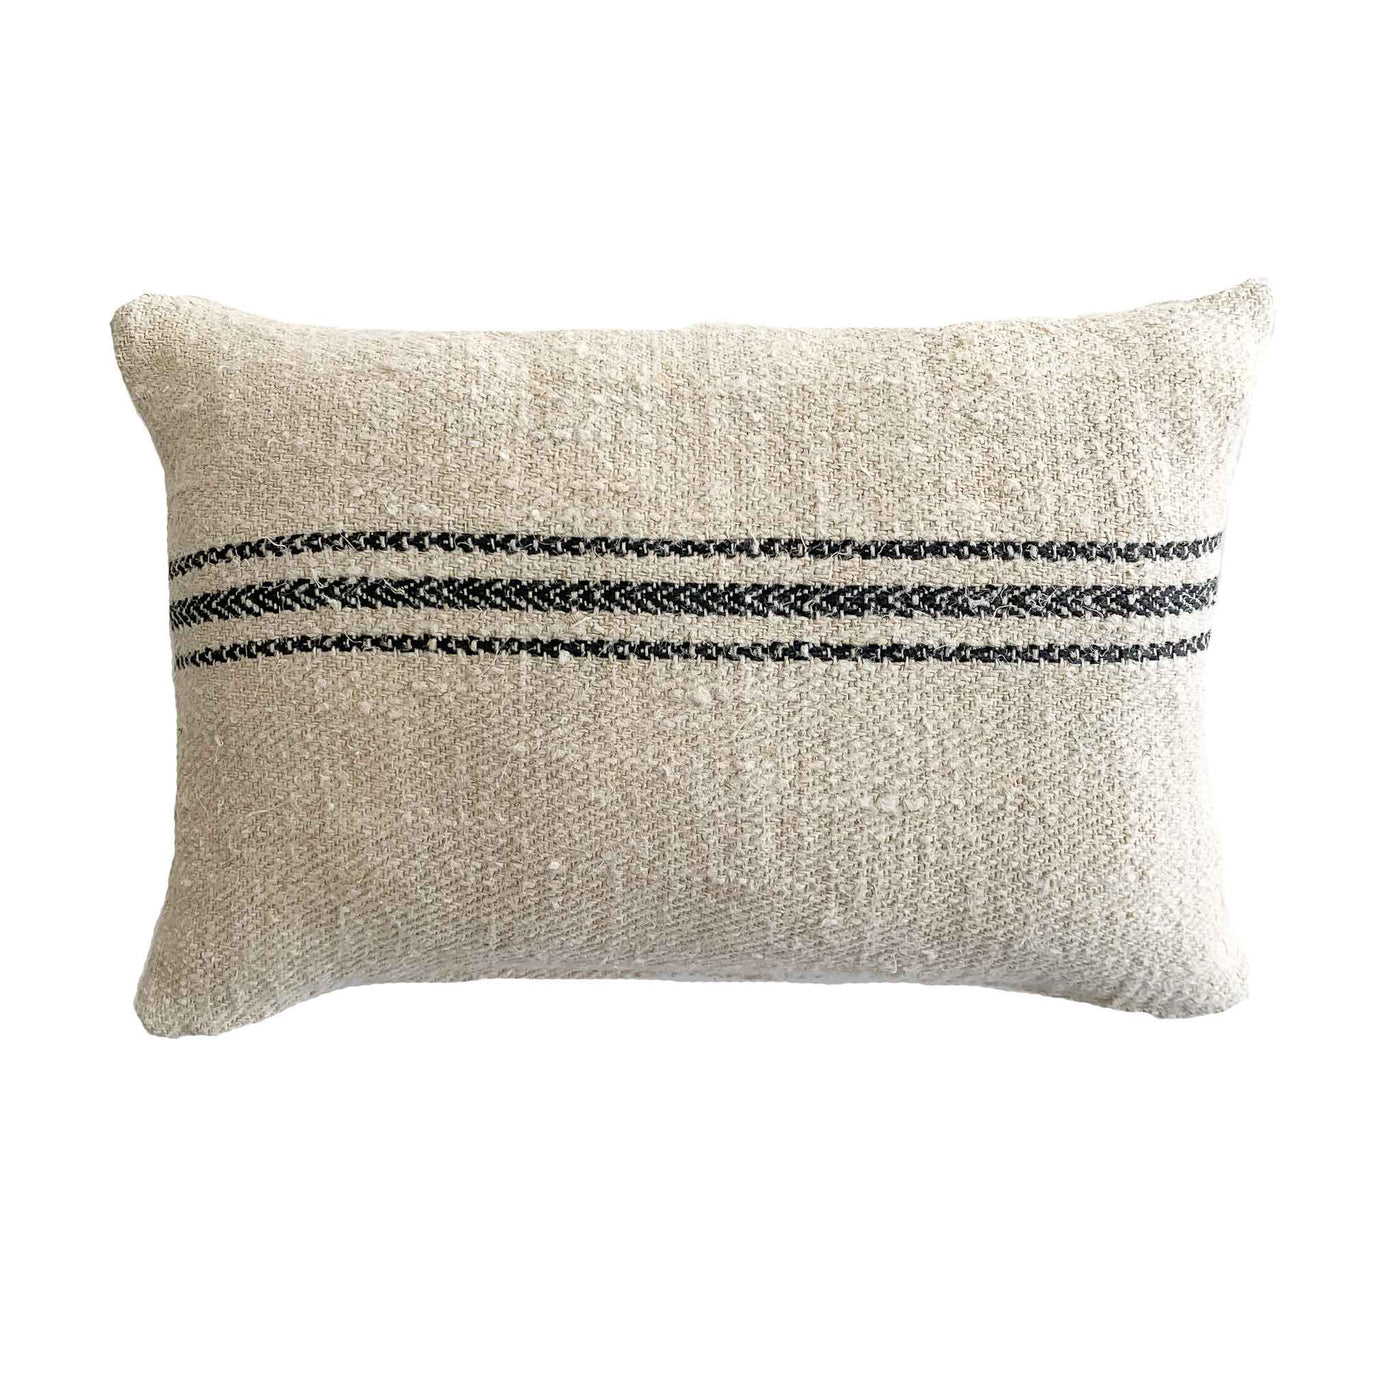 14x20 Antique Grain Sack With Black Stripes - Studio Pillows